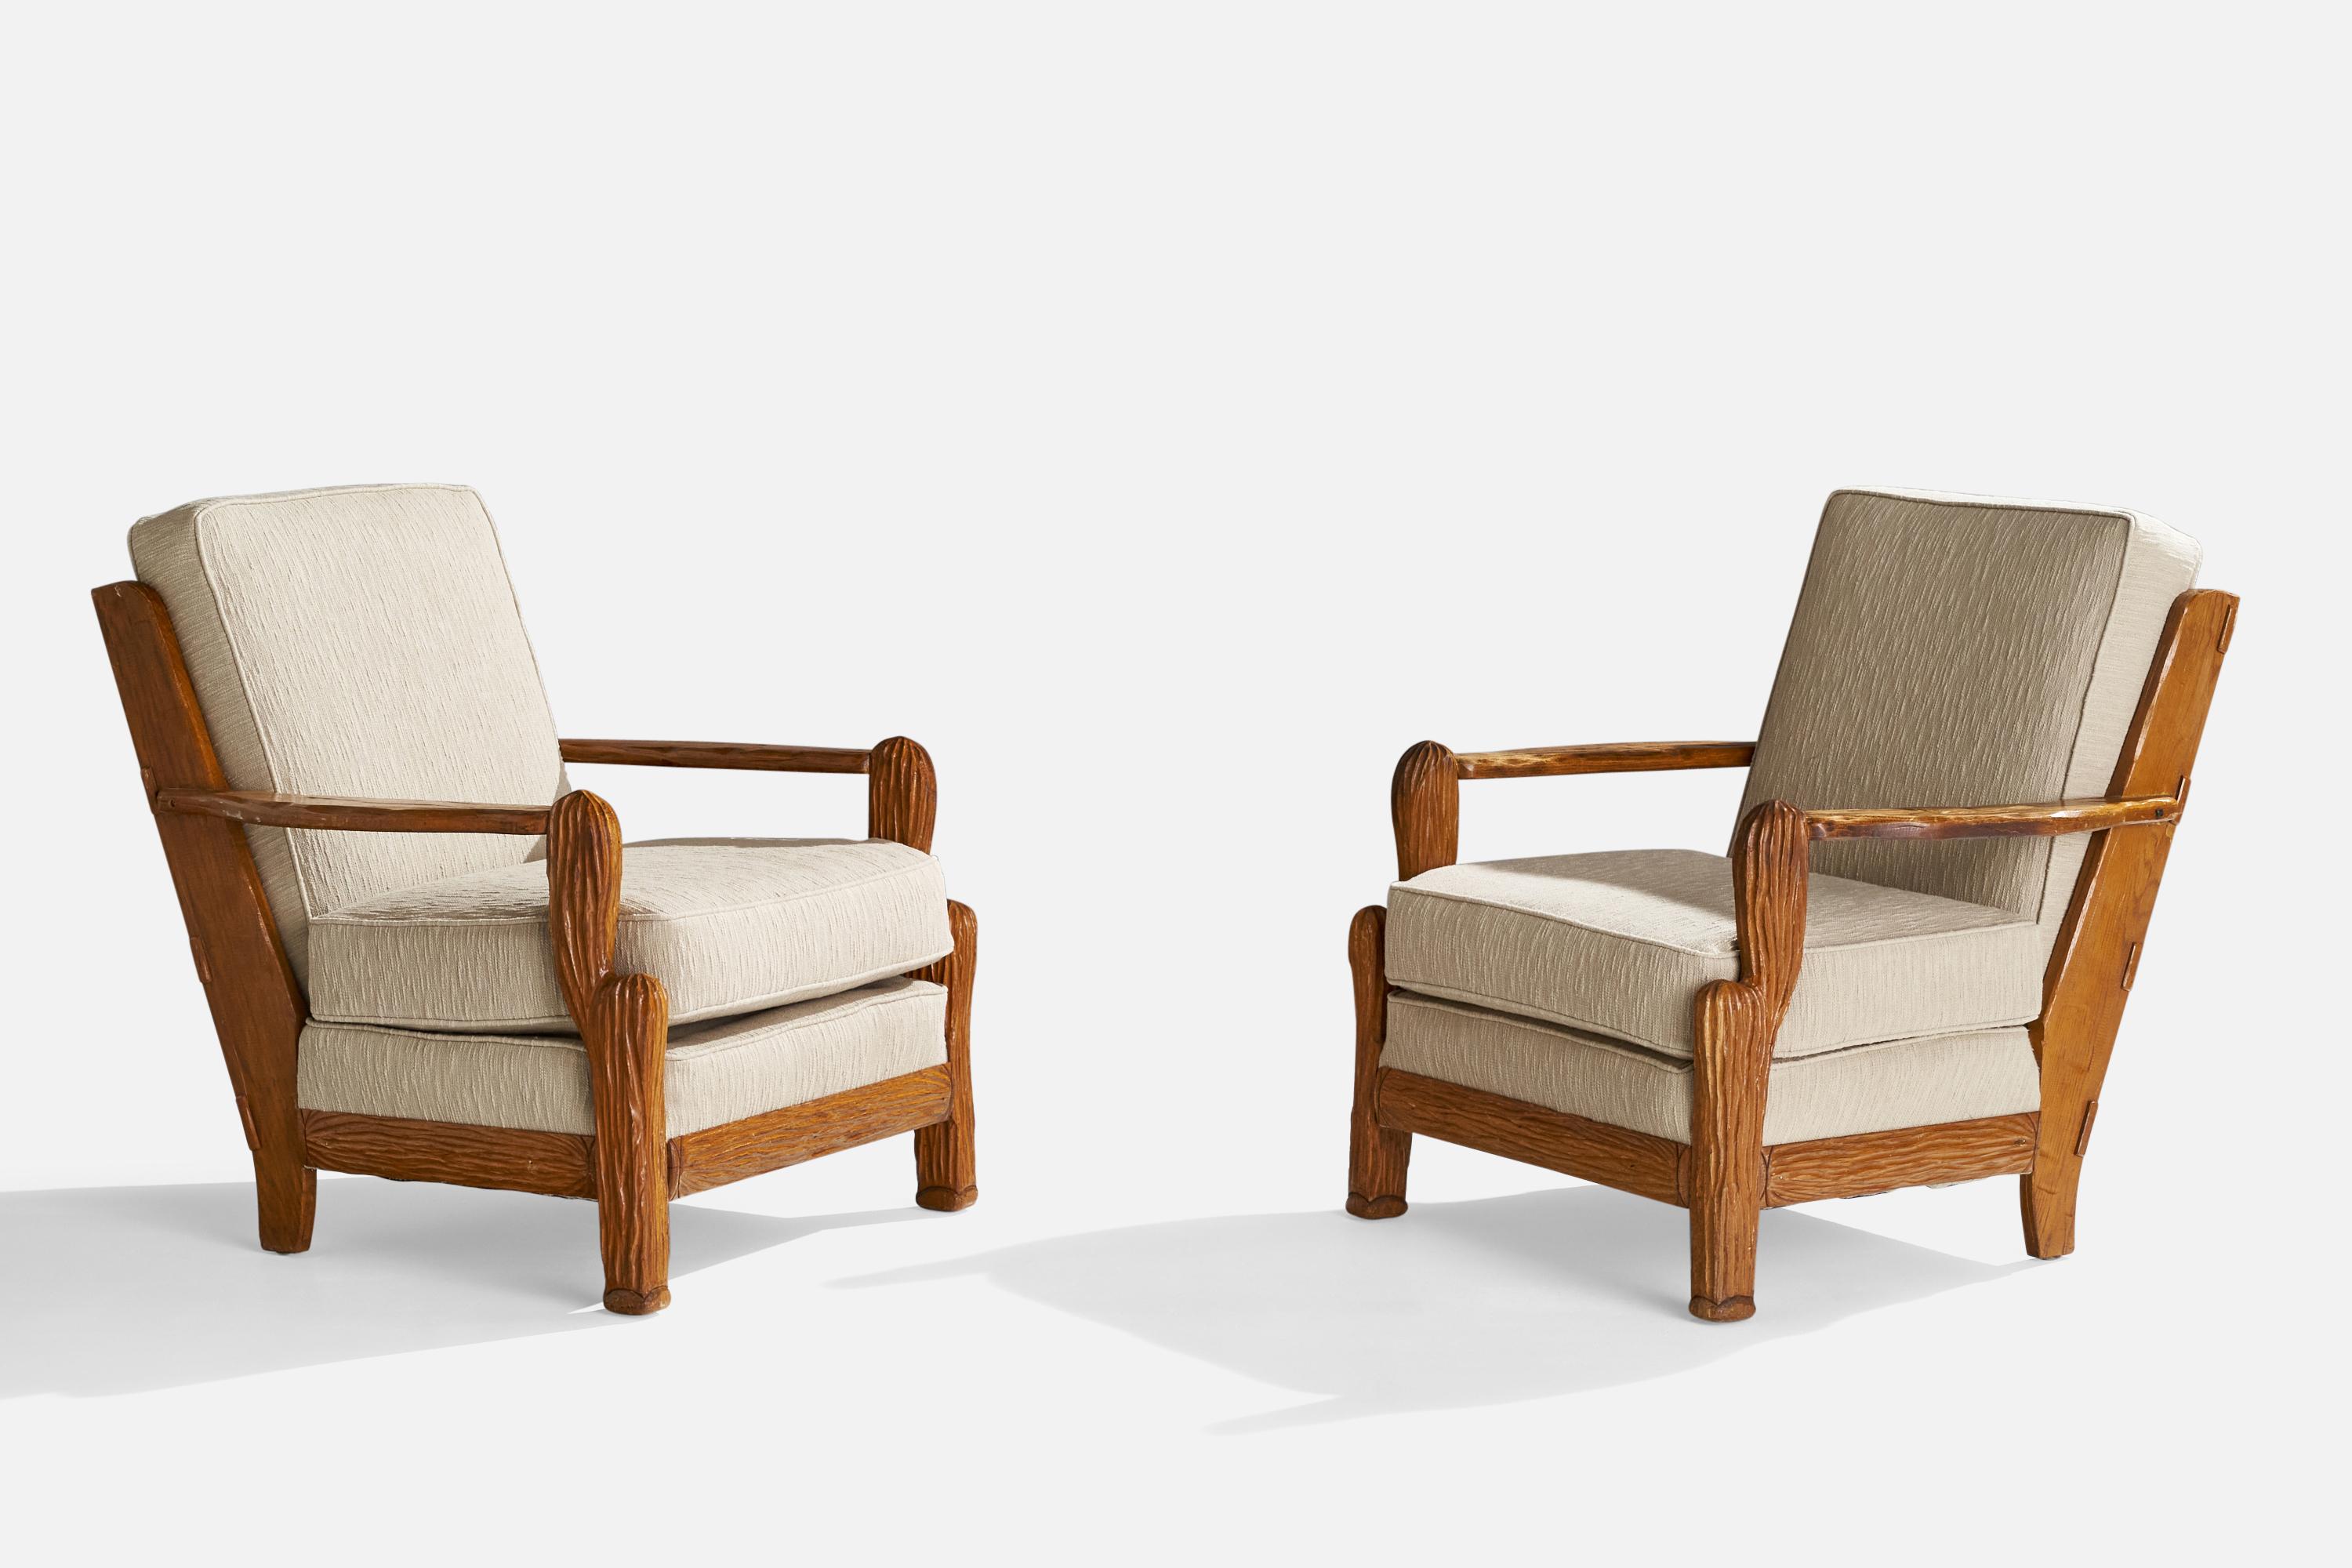 Paire de chaises longues en chêne et tissu blanc cassé, conçues et produites par A.I.Brandt Ranch Oak, États-Unis, vers les années 1950.

Hauteur du siège : 18